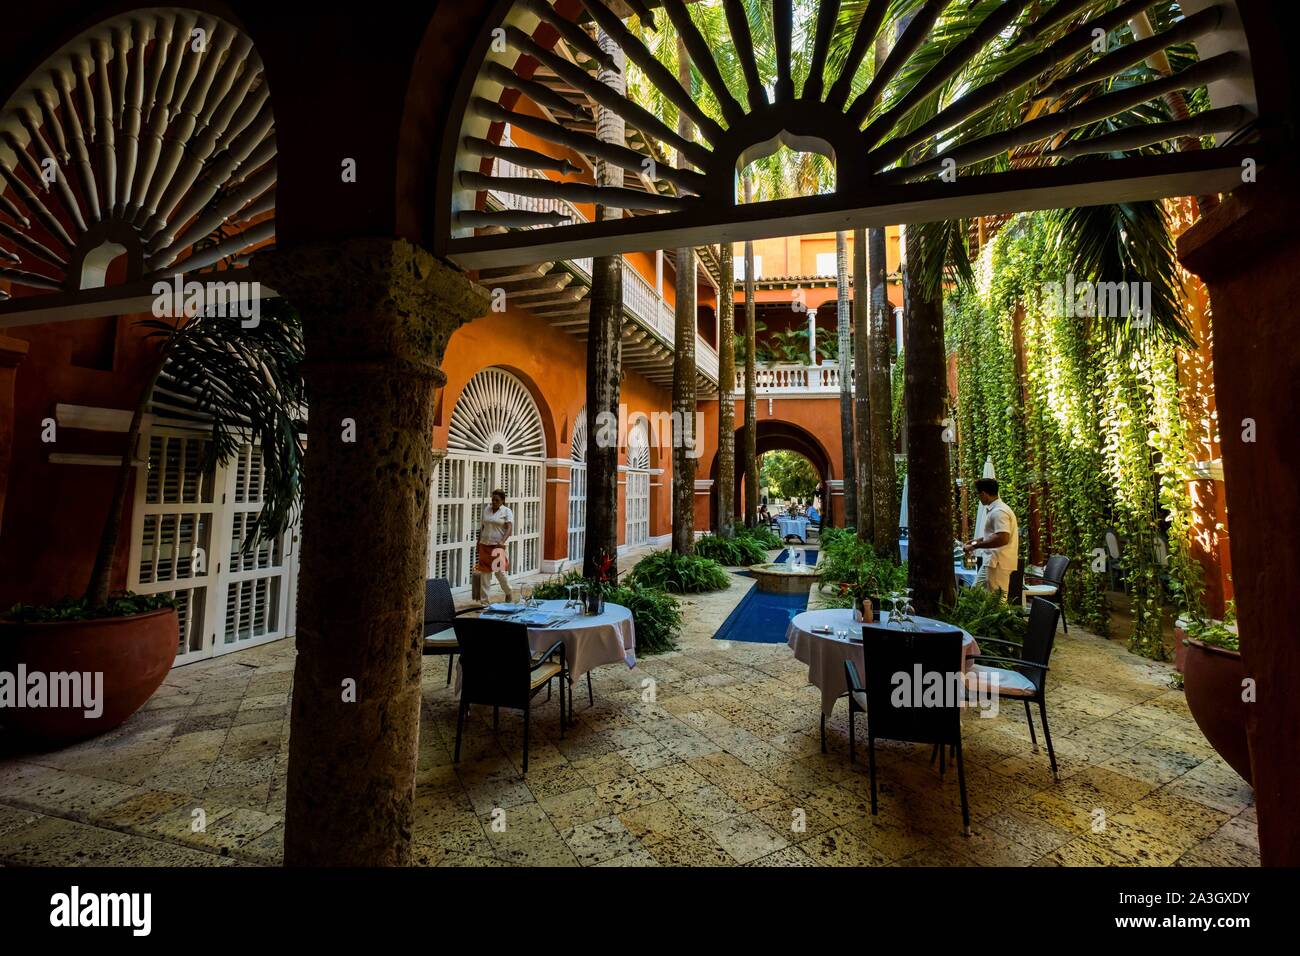 La Colombie, Département de Bolivar, Carthagène des Indes, Centre du patrimoine mondial inscrit coloniale bu l'UNESCO, restaurant dans un patio colonial Banque D'Images